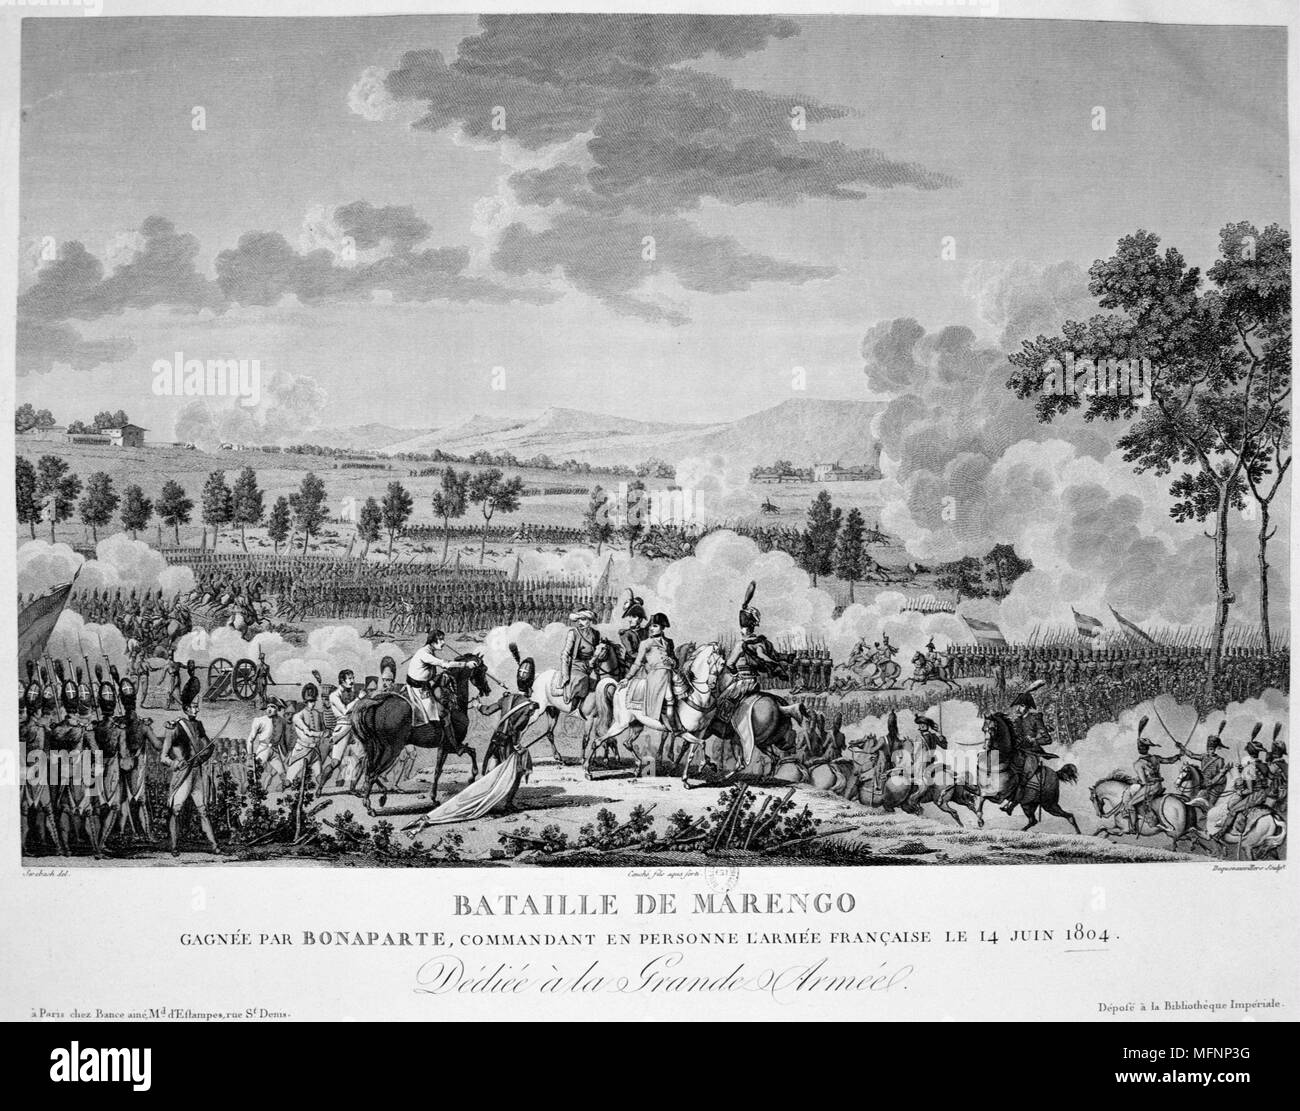 Napoléon à la bataille de Marengo, le 14 juin 1800. Les forces françaises sous Napoléon défait les autrichiens. Gravure Banque D'Images